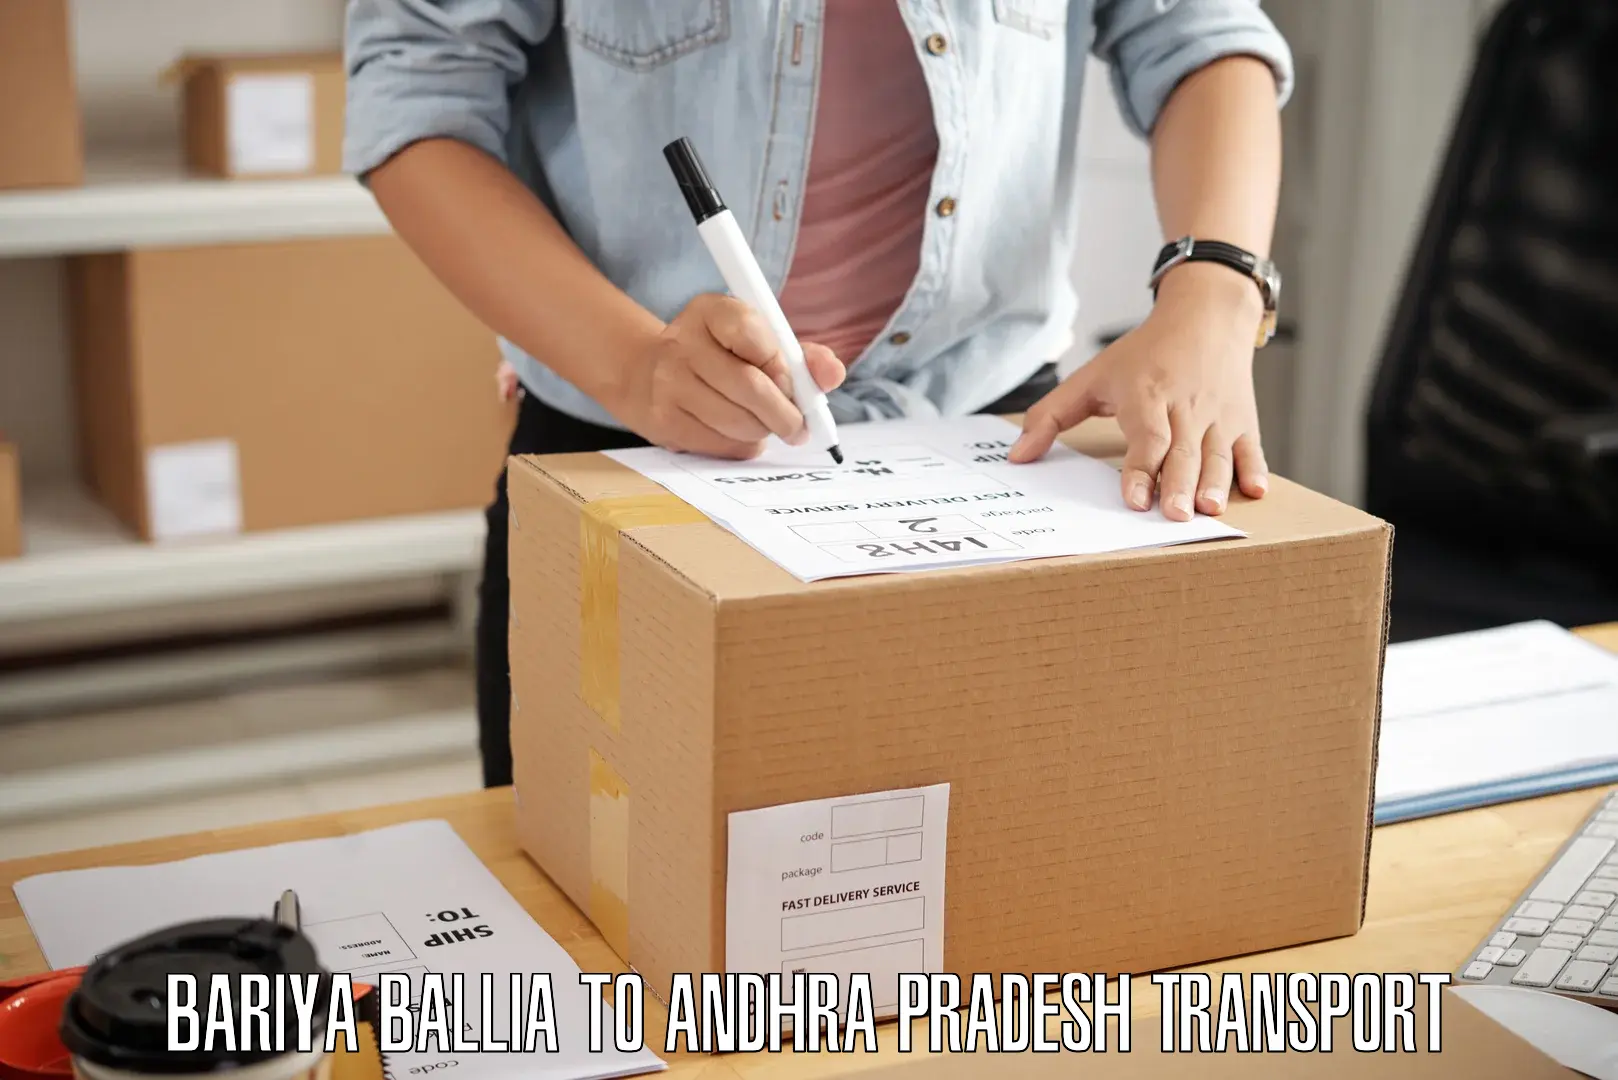 Two wheeler parcel service Bariya Ballia to Madakasira